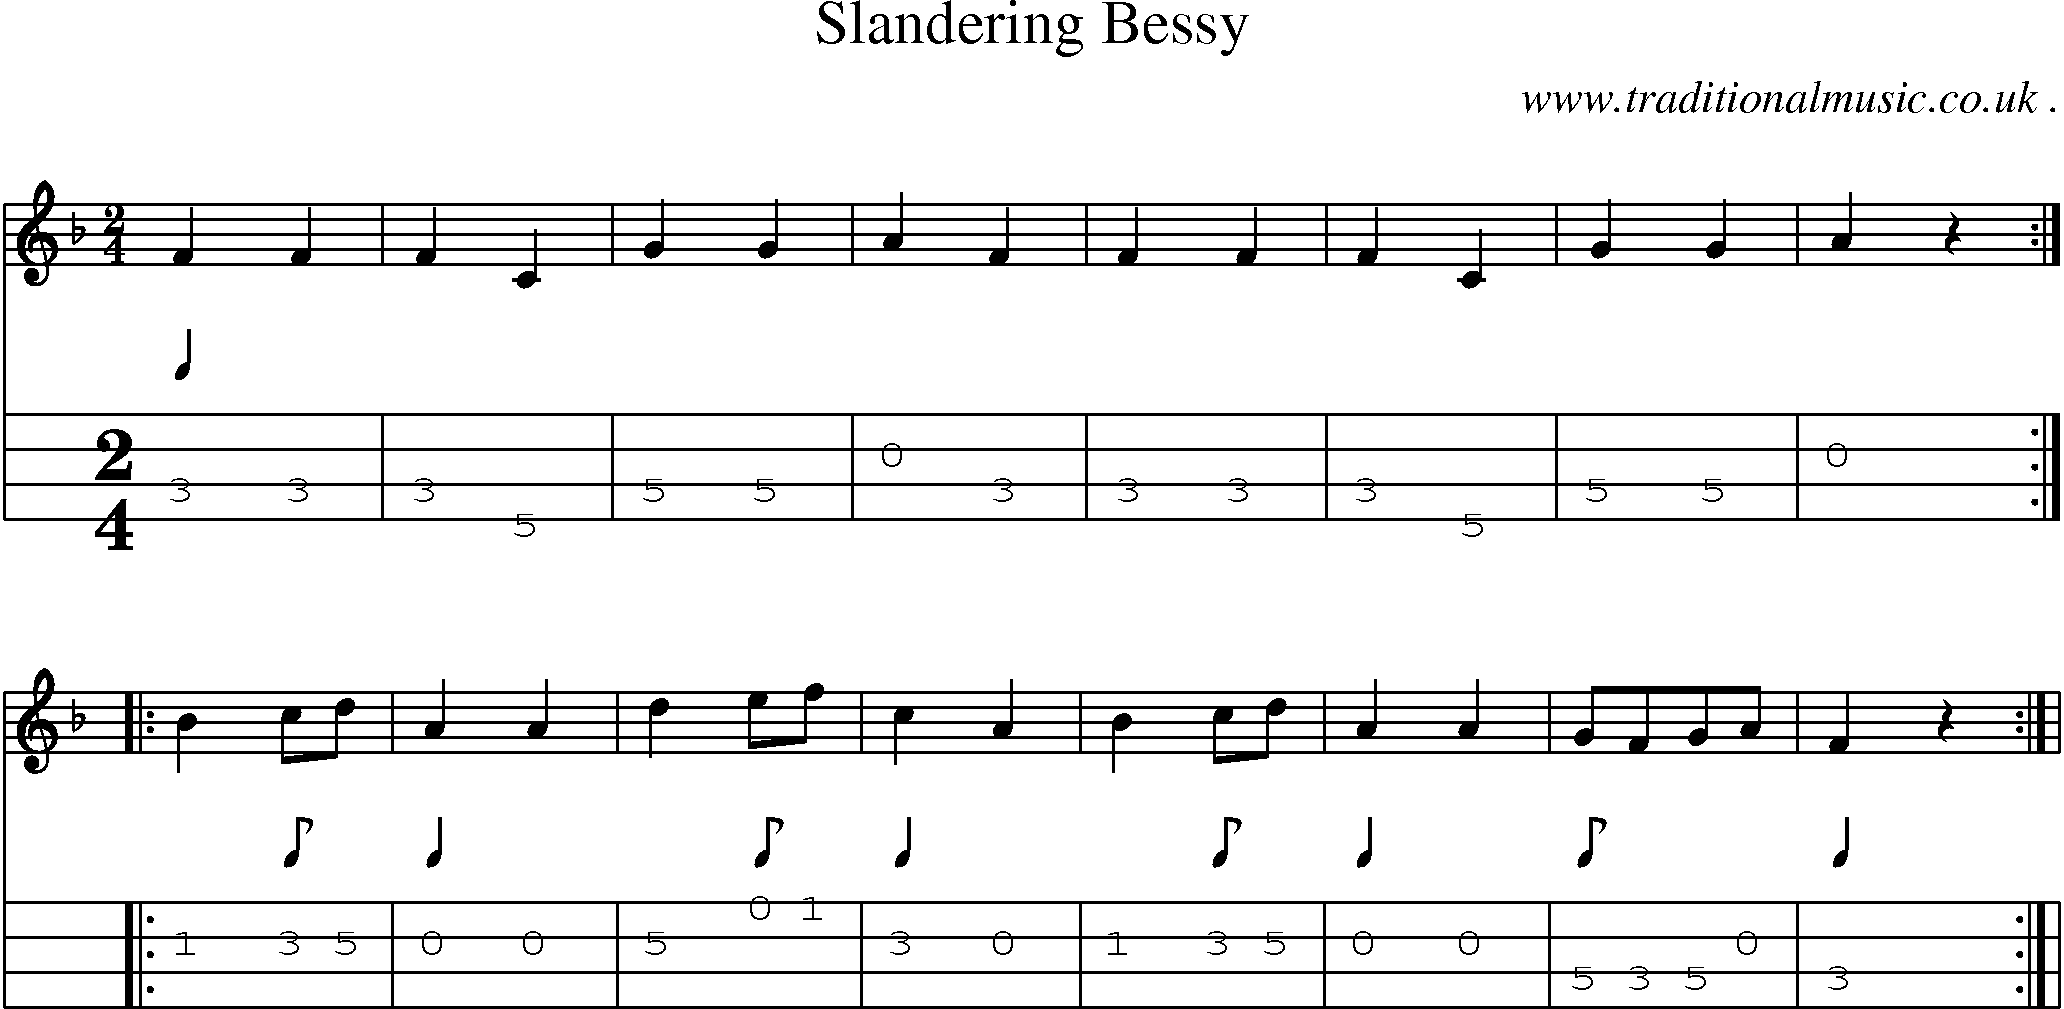 Sheet-Music and Mandolin Tabs for Slandering Bessy